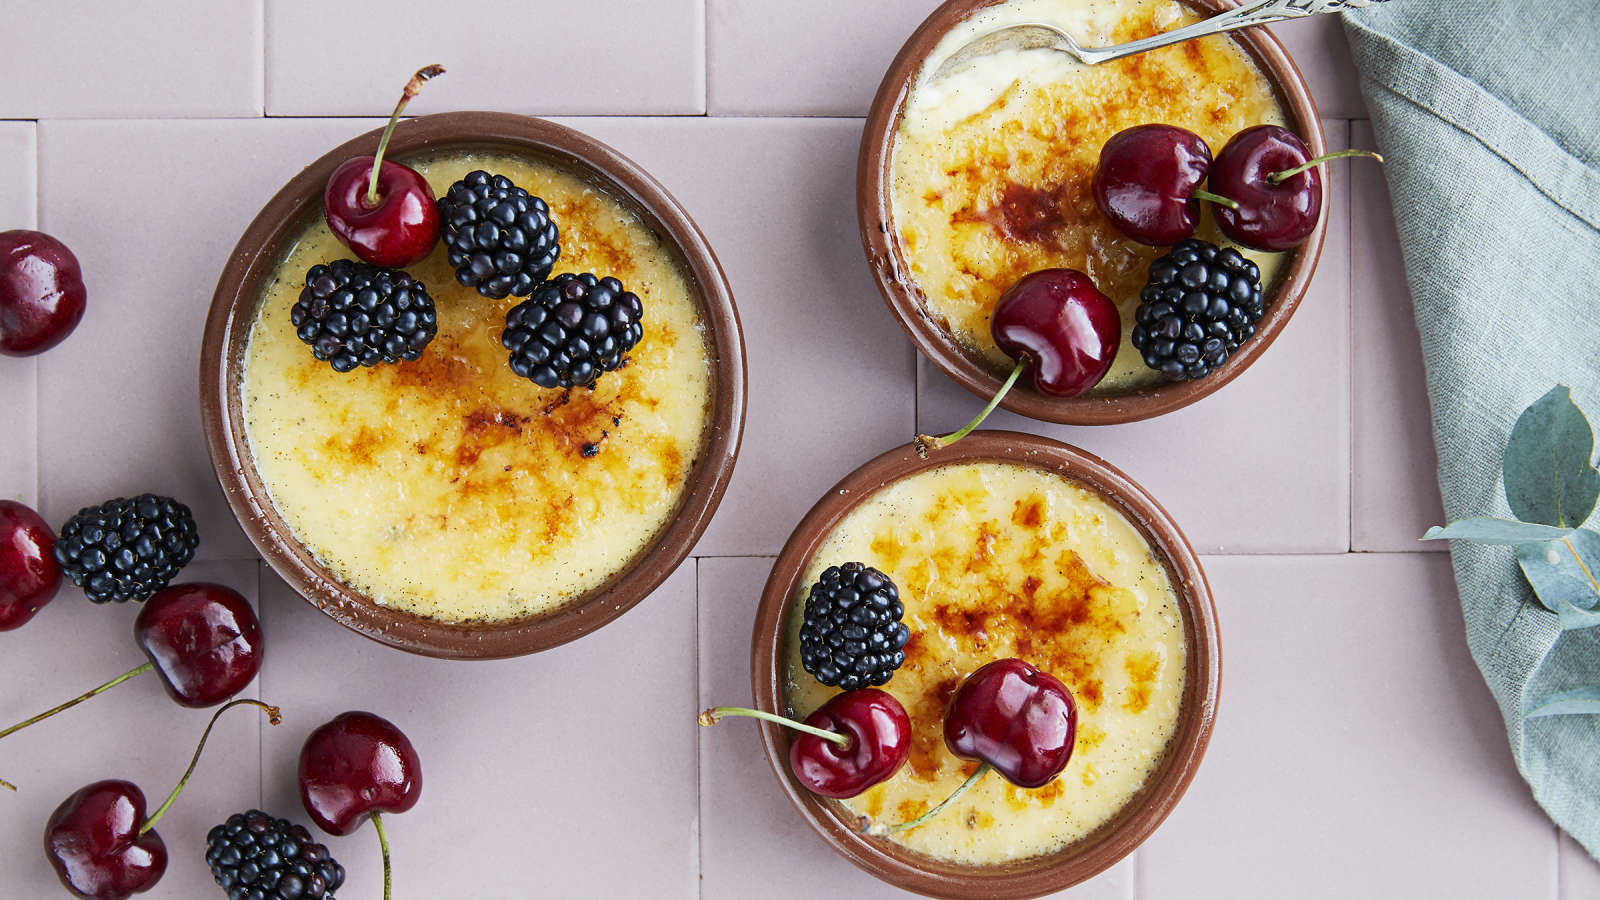 Kolme crème brûléeta, jotka on koristeltu tuoreilla kirsikoilla ja karhunvadelmilla. Kulhojen veressä liina sekä koristeluun käytettyjä marjoja.